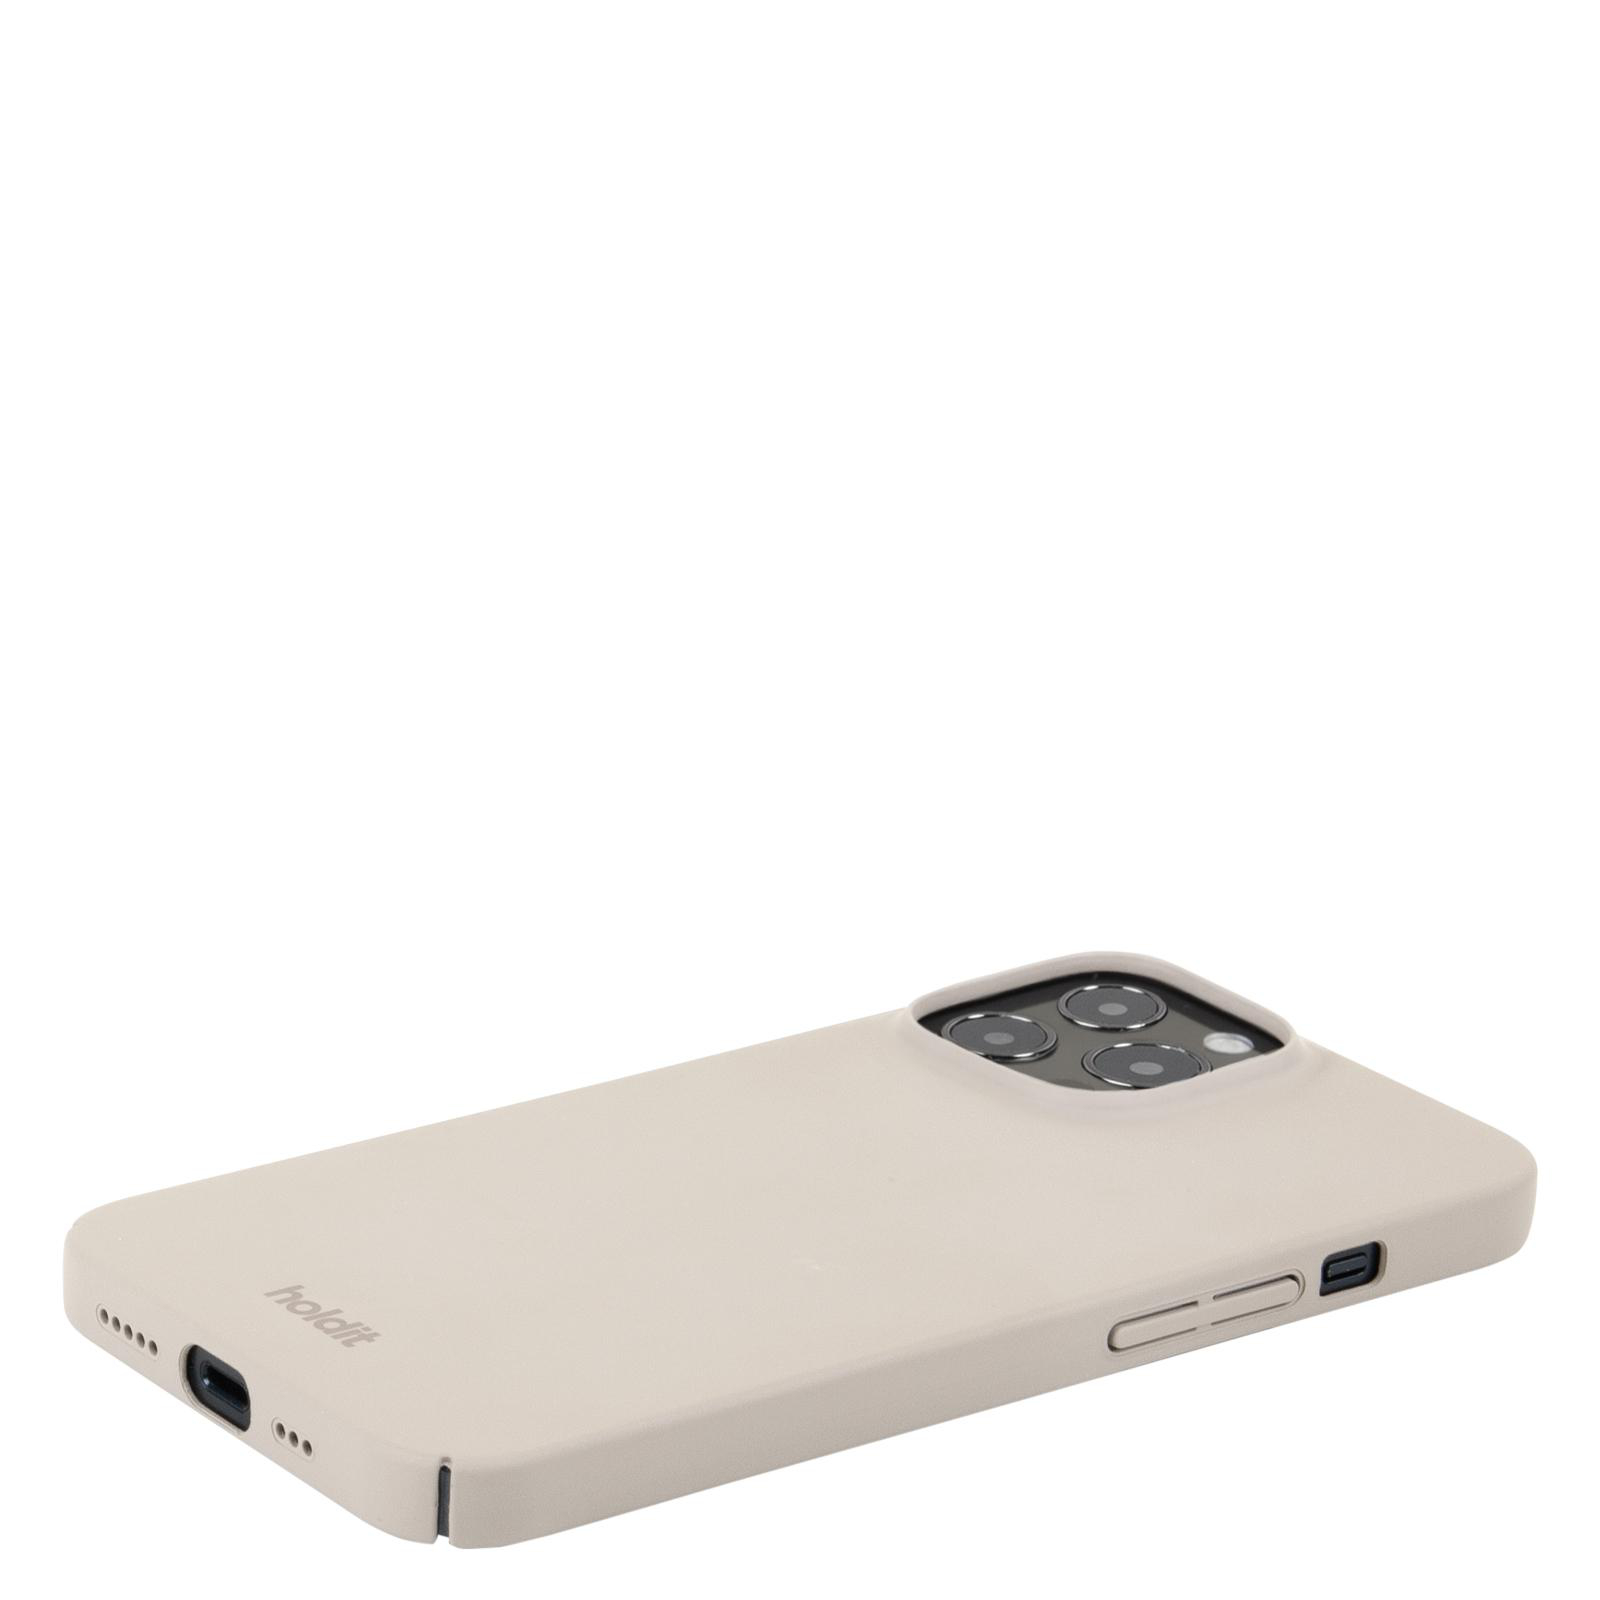 HOLDIT Slim Case, Backcover, 13 Apple, Pro, Light iPhone Beige